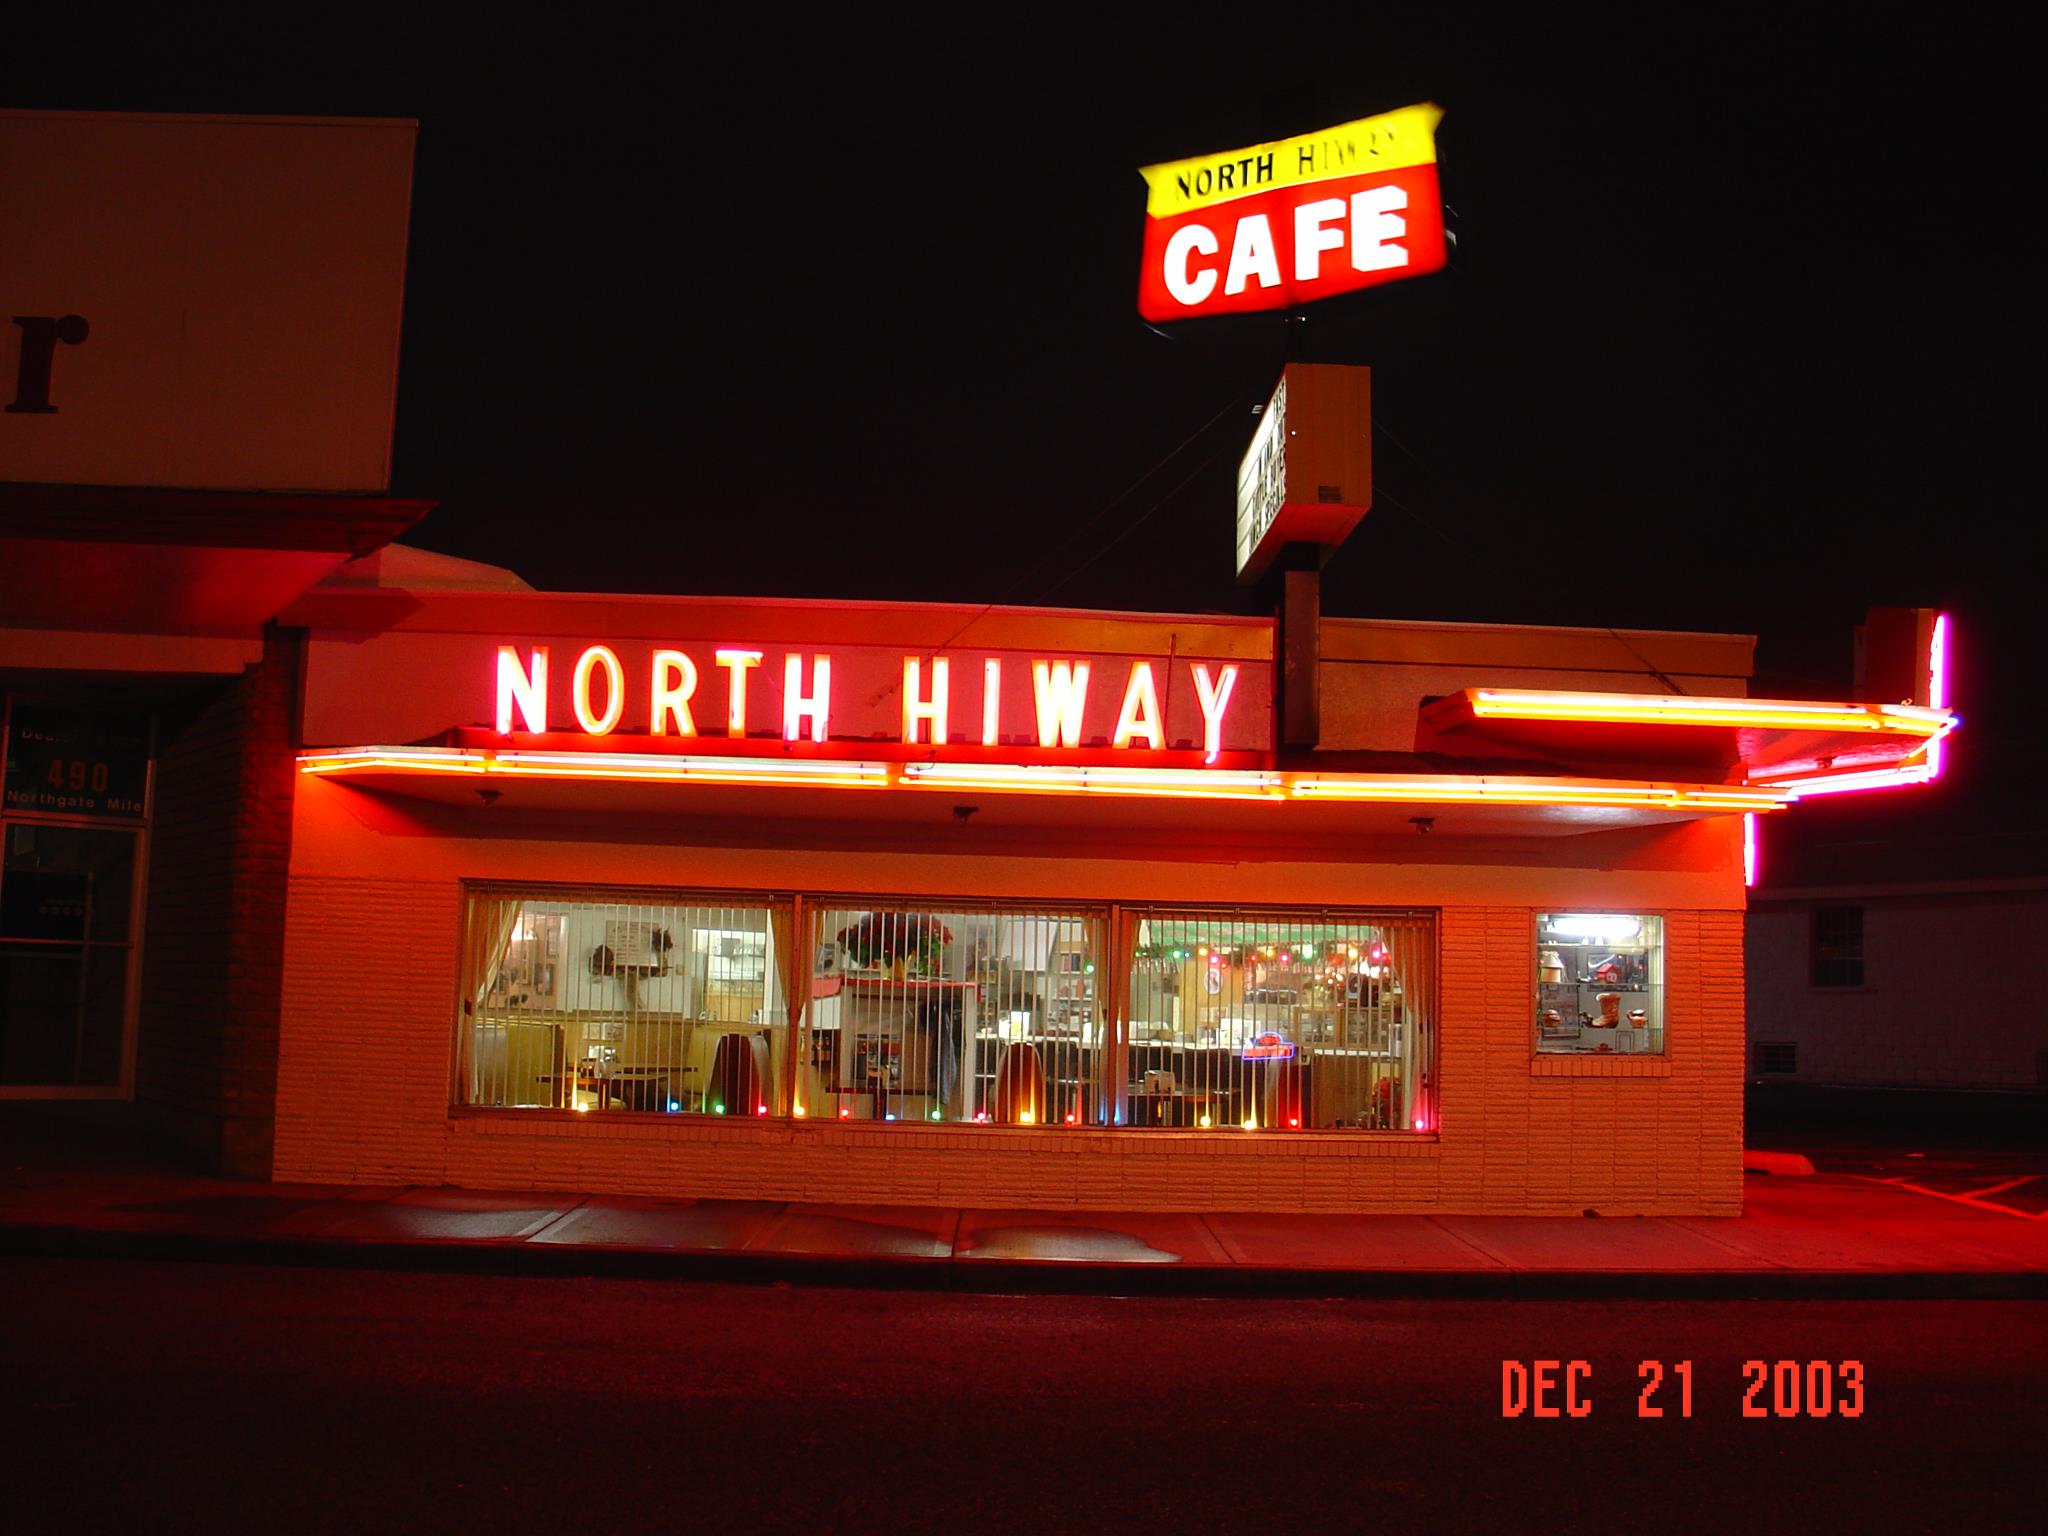 North Hi-Way Cafe